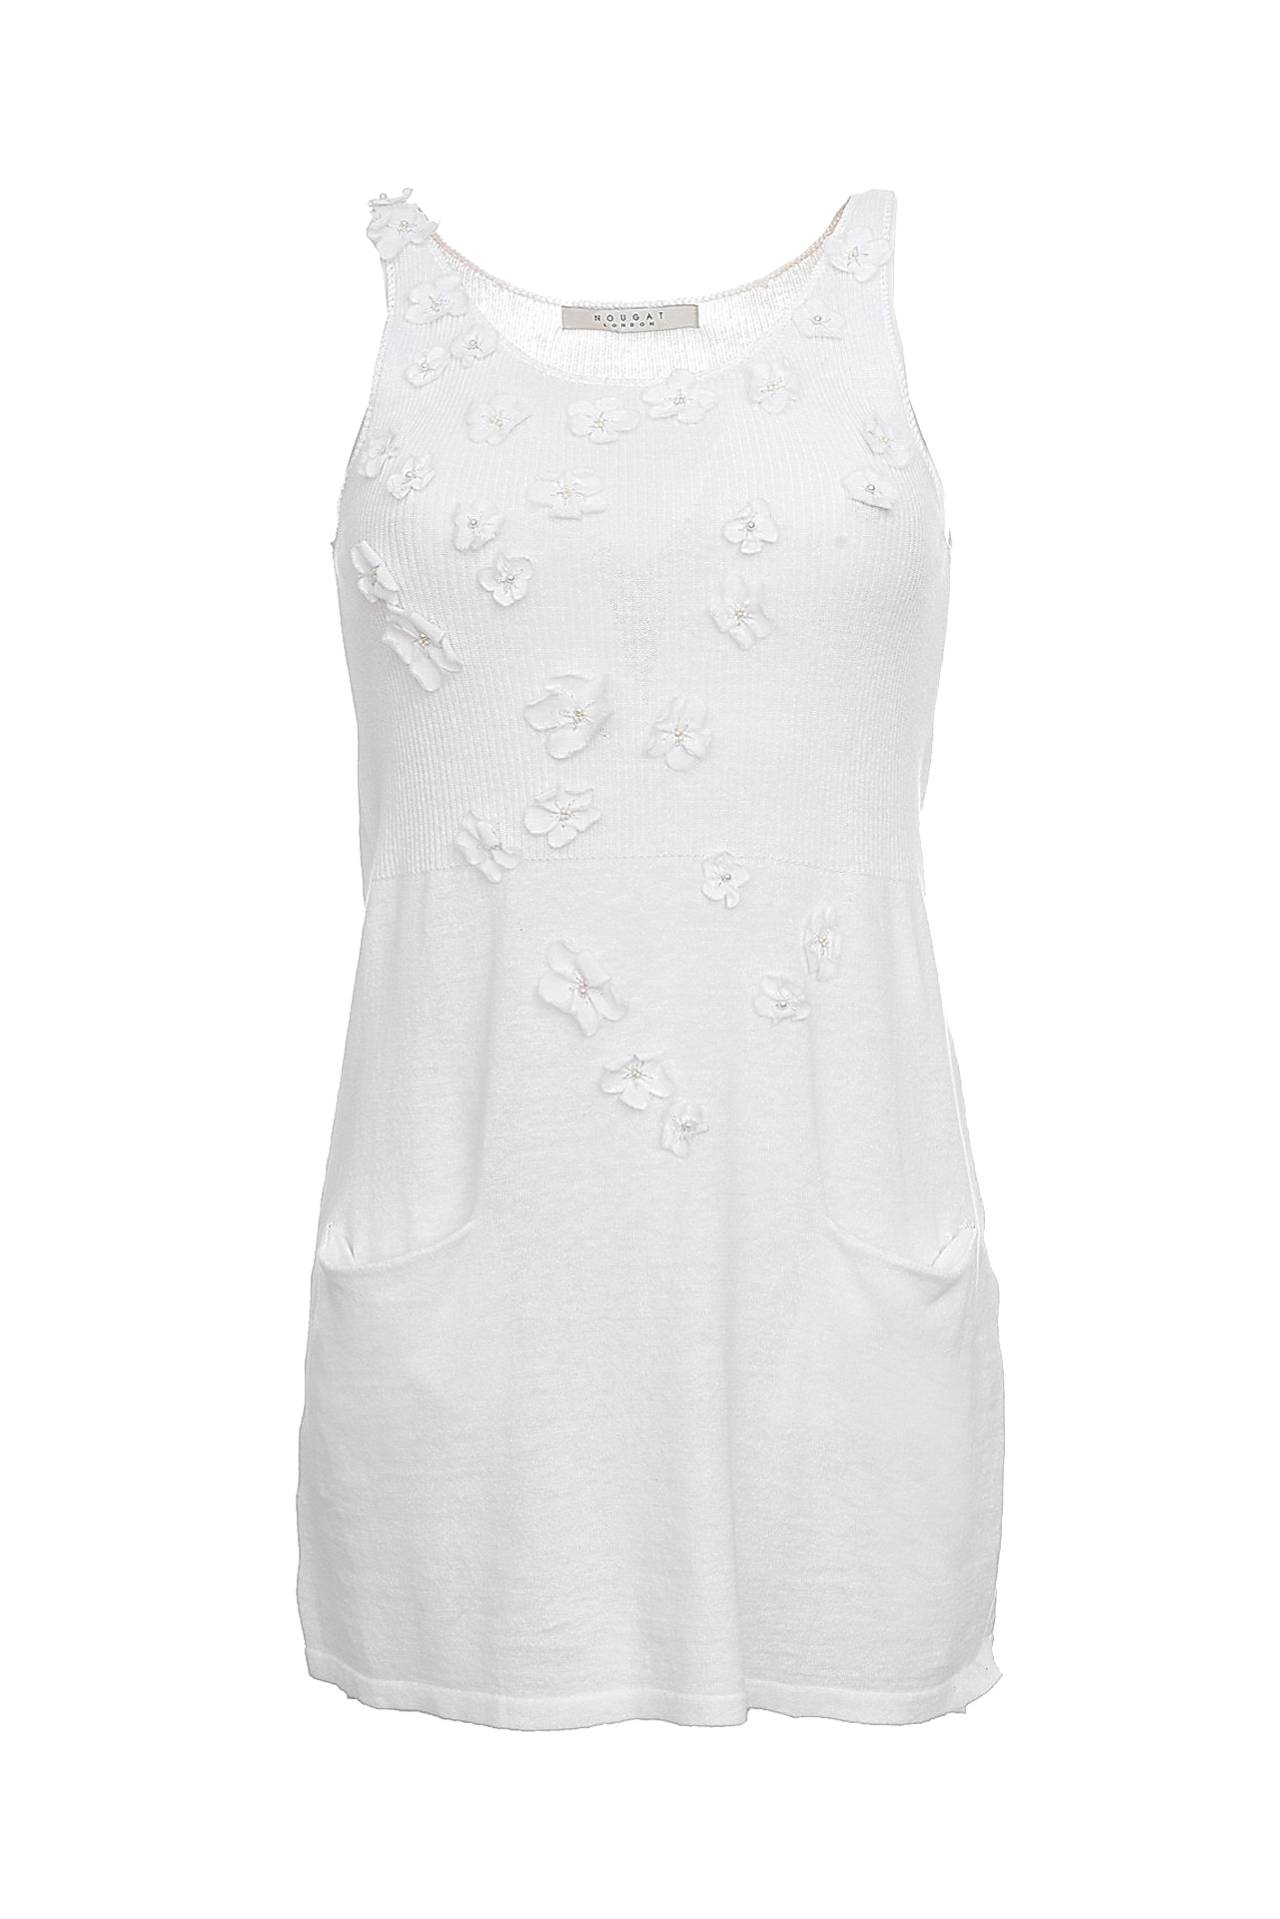 Одежда женская Платье NOUGAT LONDON (NG7433/10.1). Купить за 12950 руб.